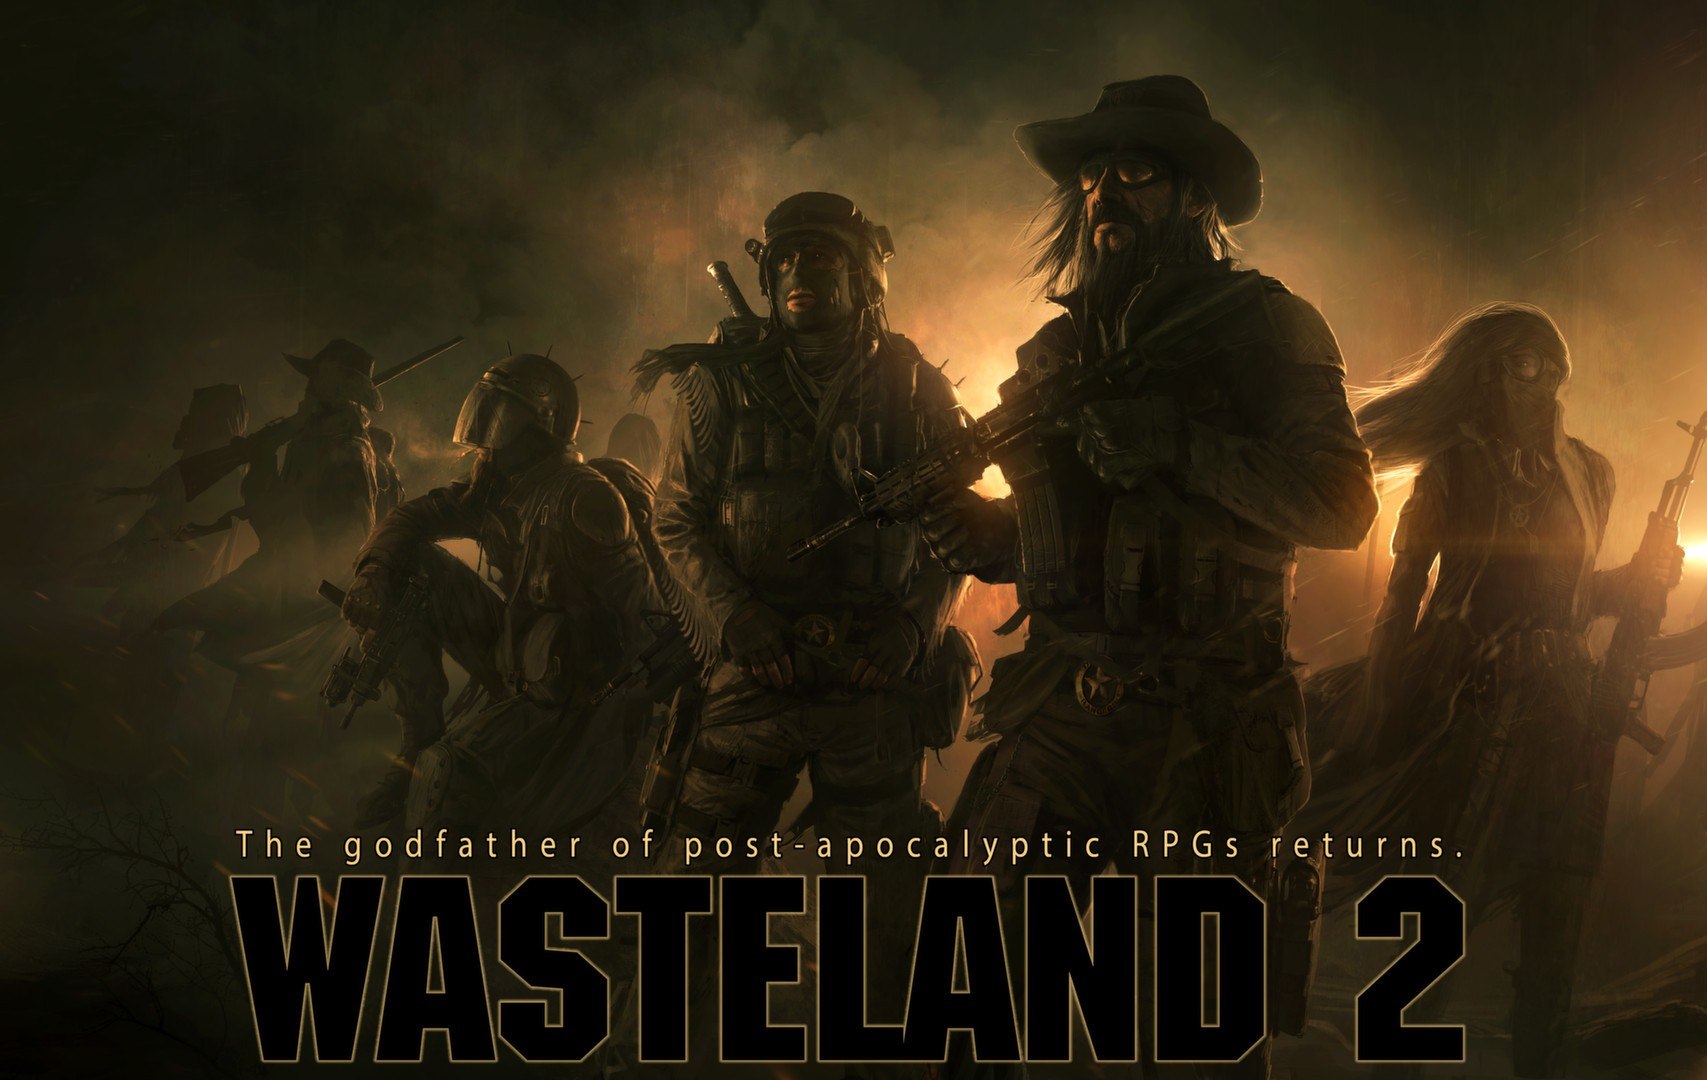 Wasteland 2: Director's Cut - Classic Edition Steam CD Key 11.19 USD